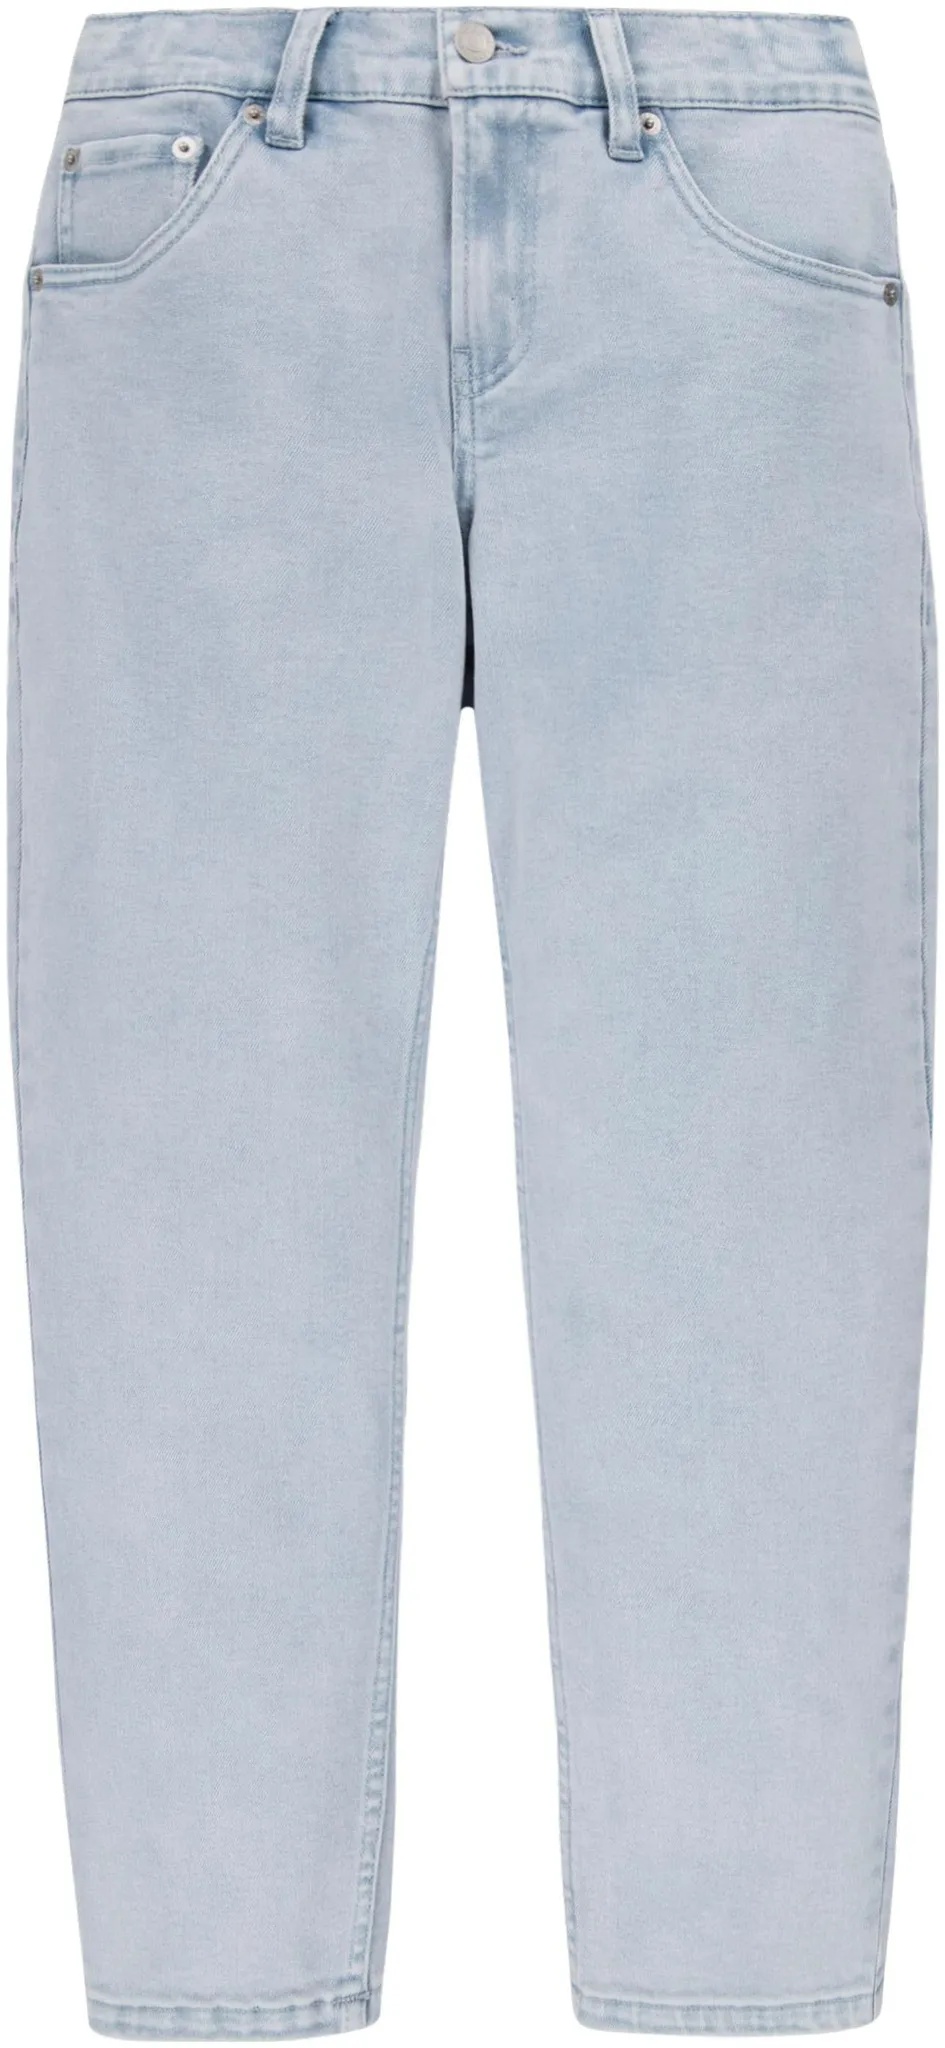 Stretch-Jeans LEVI'S KIDS "LVB STAY LOOSE TAPER JEANS" Gr. 16 (176), N-Gr, silberfarben (silver linin) Jungen Jeans Bekleidung for BOYS